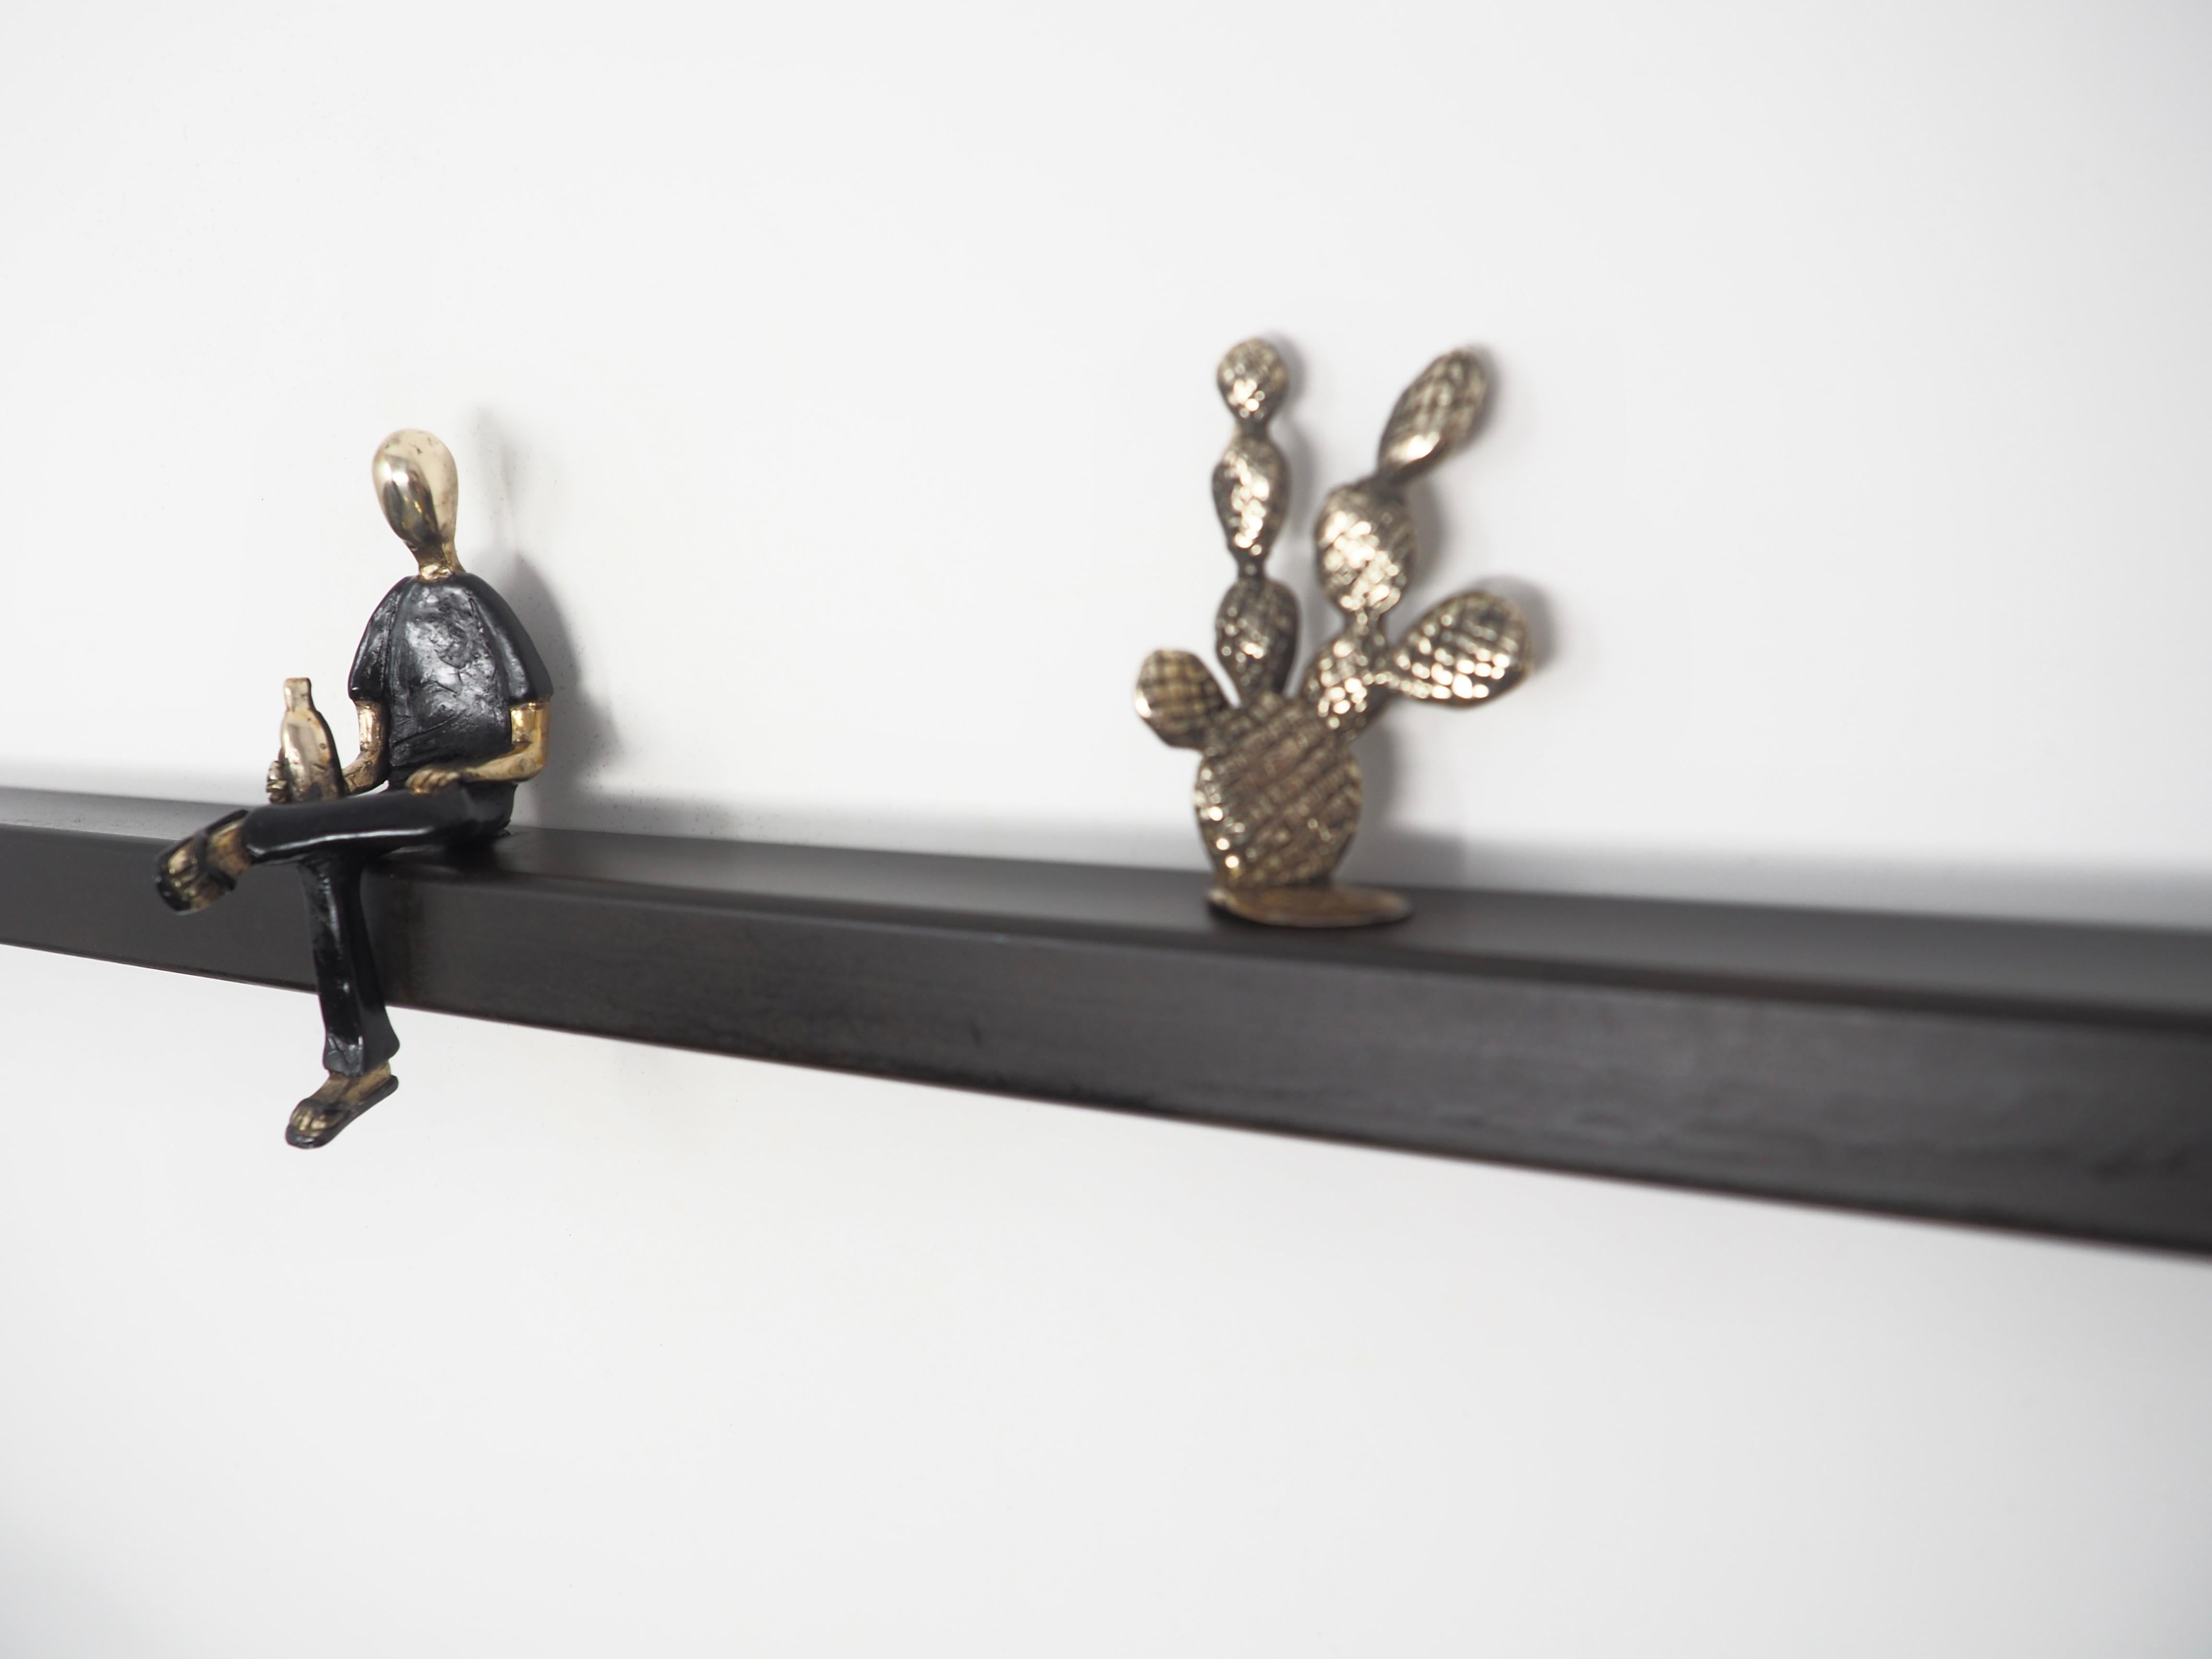 Les petites sculptures figuratives en bronze de Mireia Serra capturent les sentiments et les sensations de la vie quotidienne. Elle transforme les dilemmes quotidiens en quelque chose de beau qui capture la beauté d'un moment : des femmes prenant